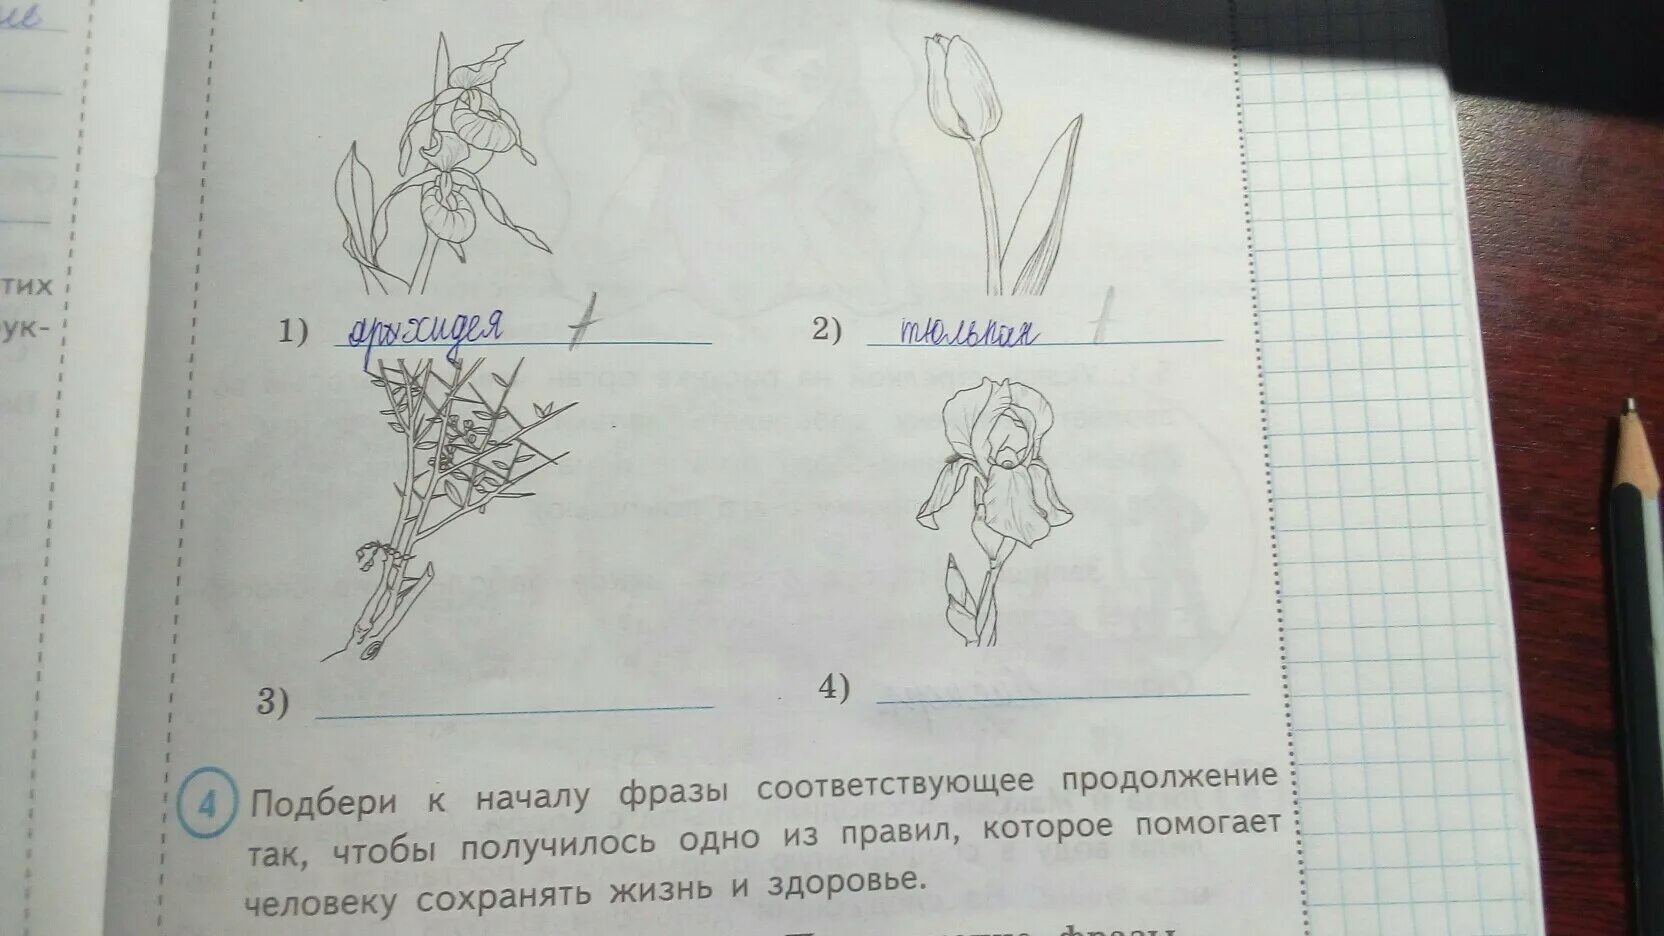 Рассмотри изображение ковыля ландыша тюльпана. На рисунках представлены изображения растений. На рисунках представлено изображение. На рисунках представлено изображение тюльпана. На рисунках представлены изображения тюльпана ириса верблюжьей.